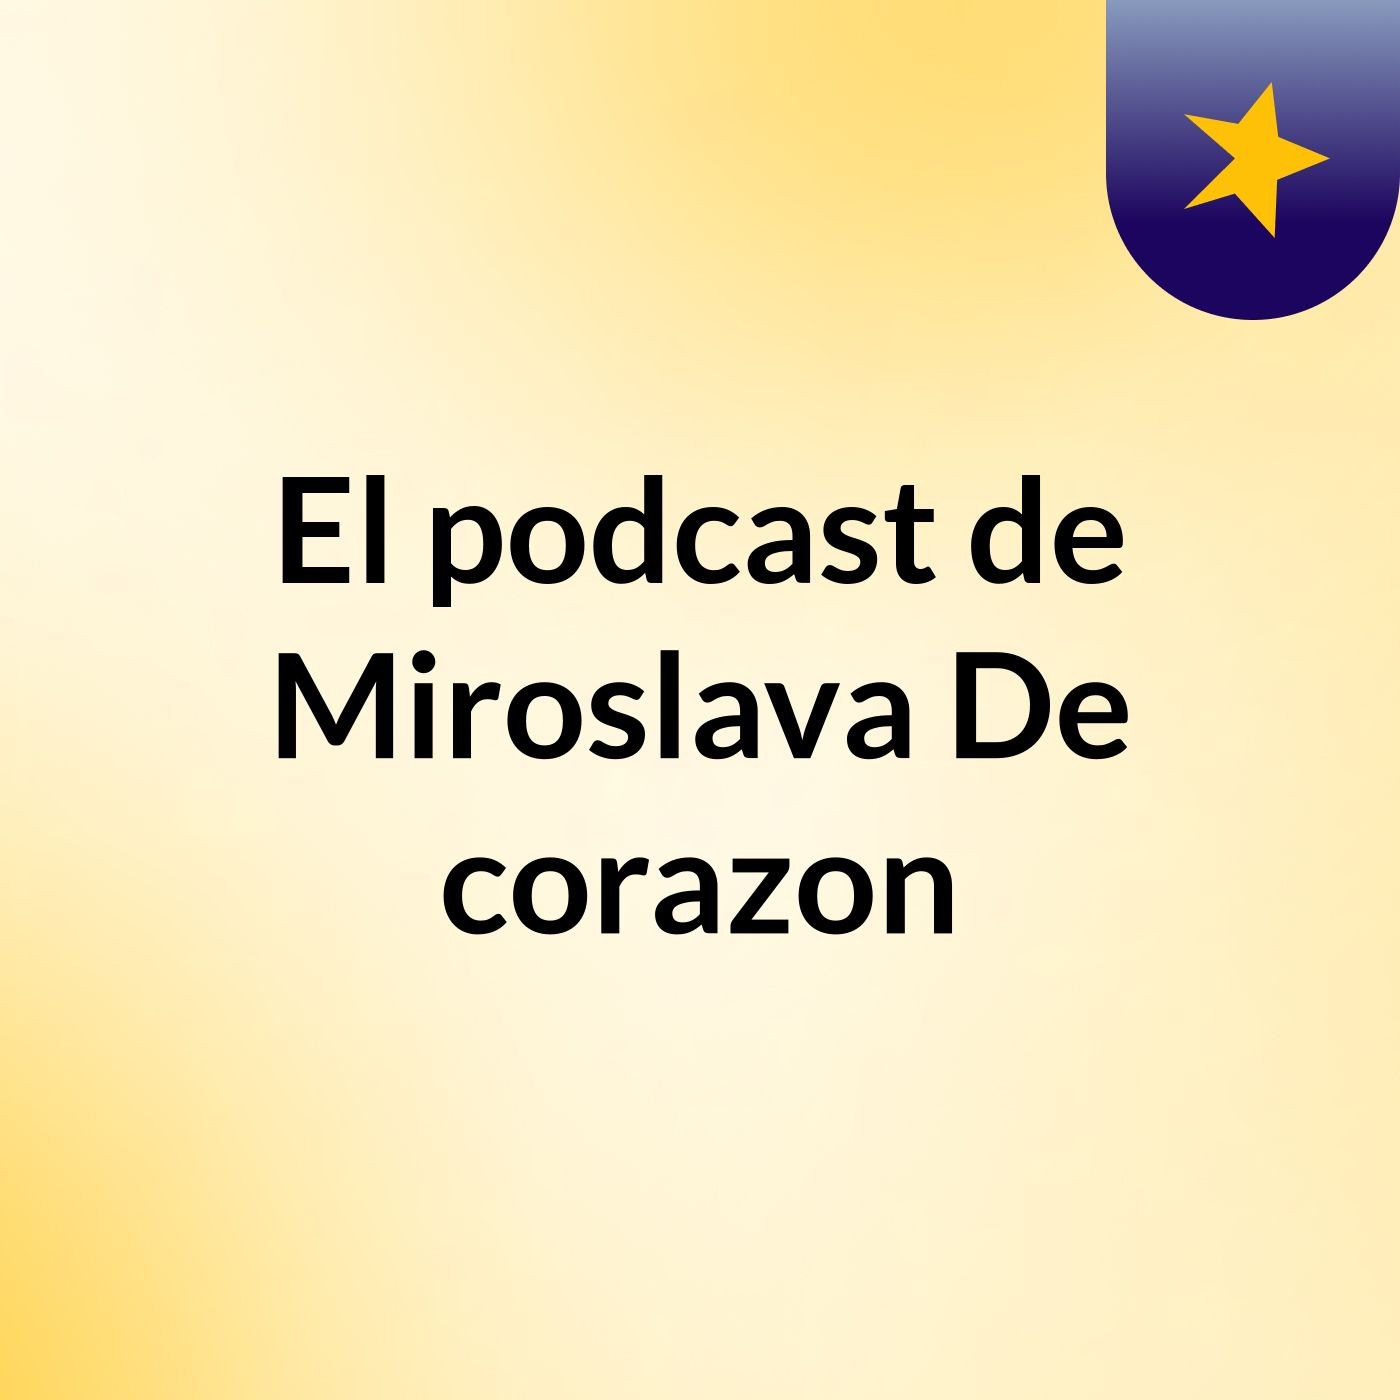 El podcast de Miroslava De corazon